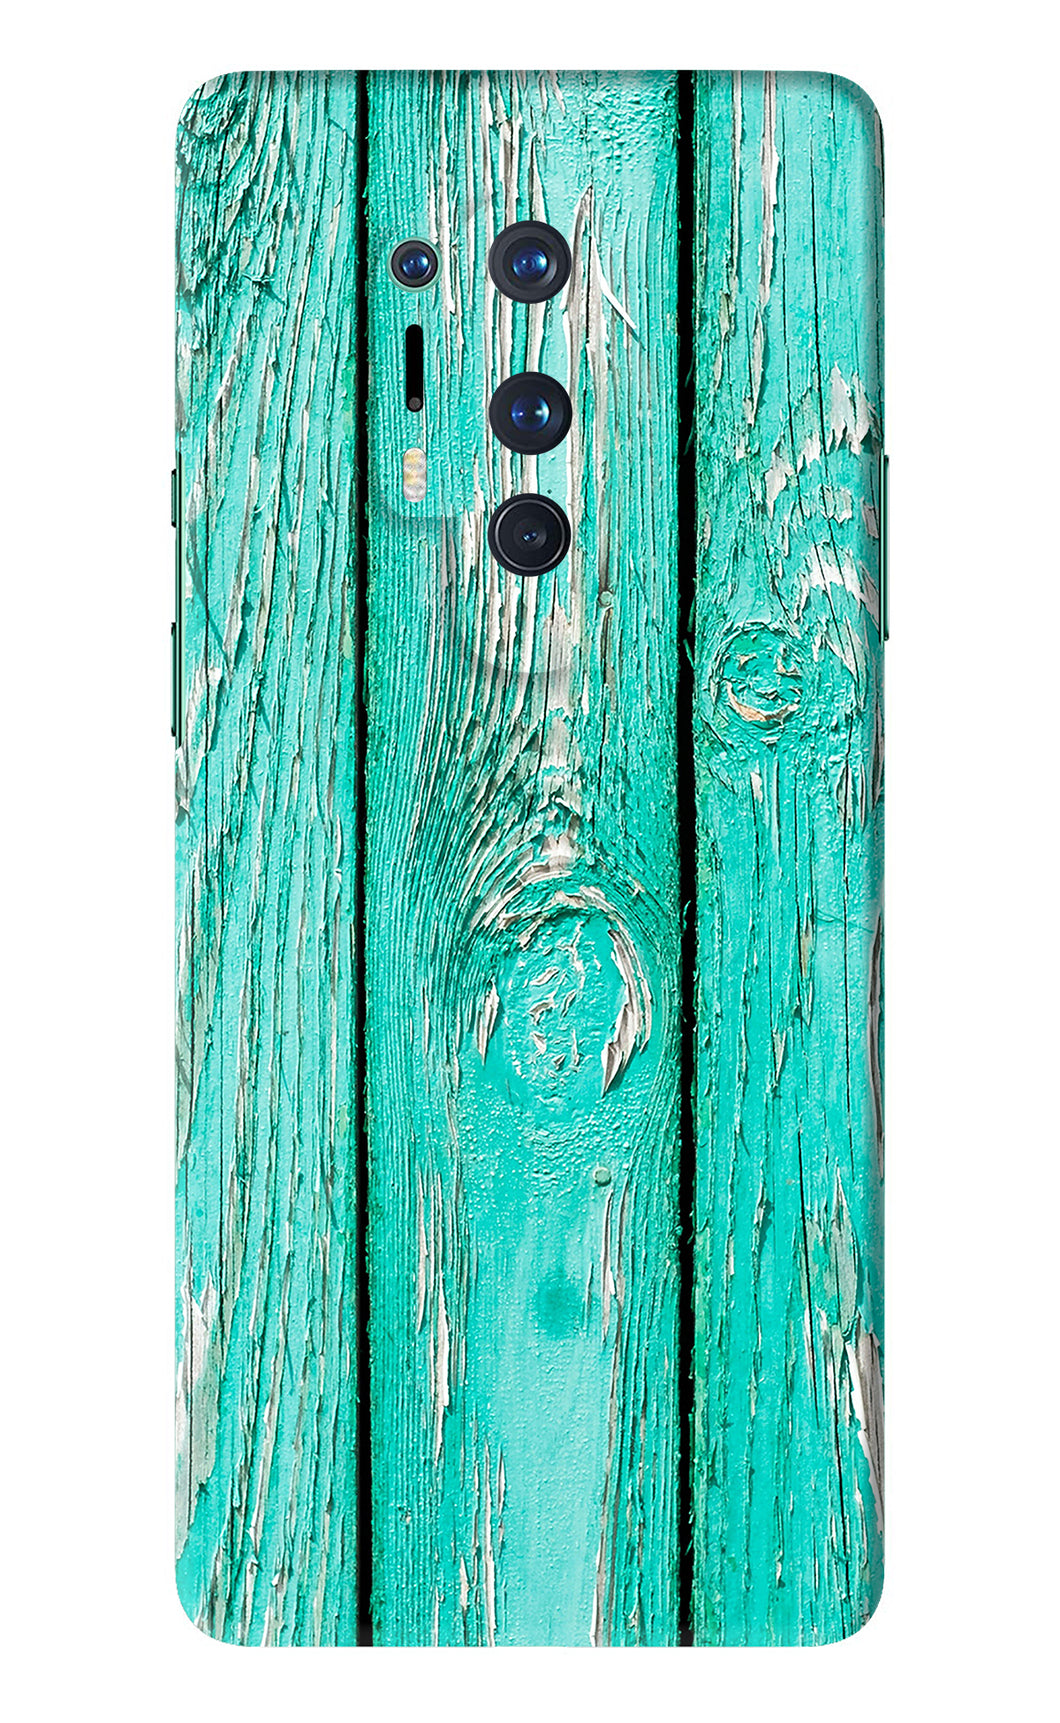 Blue Wood OnePlus 8 Pro Back Skin Wrap